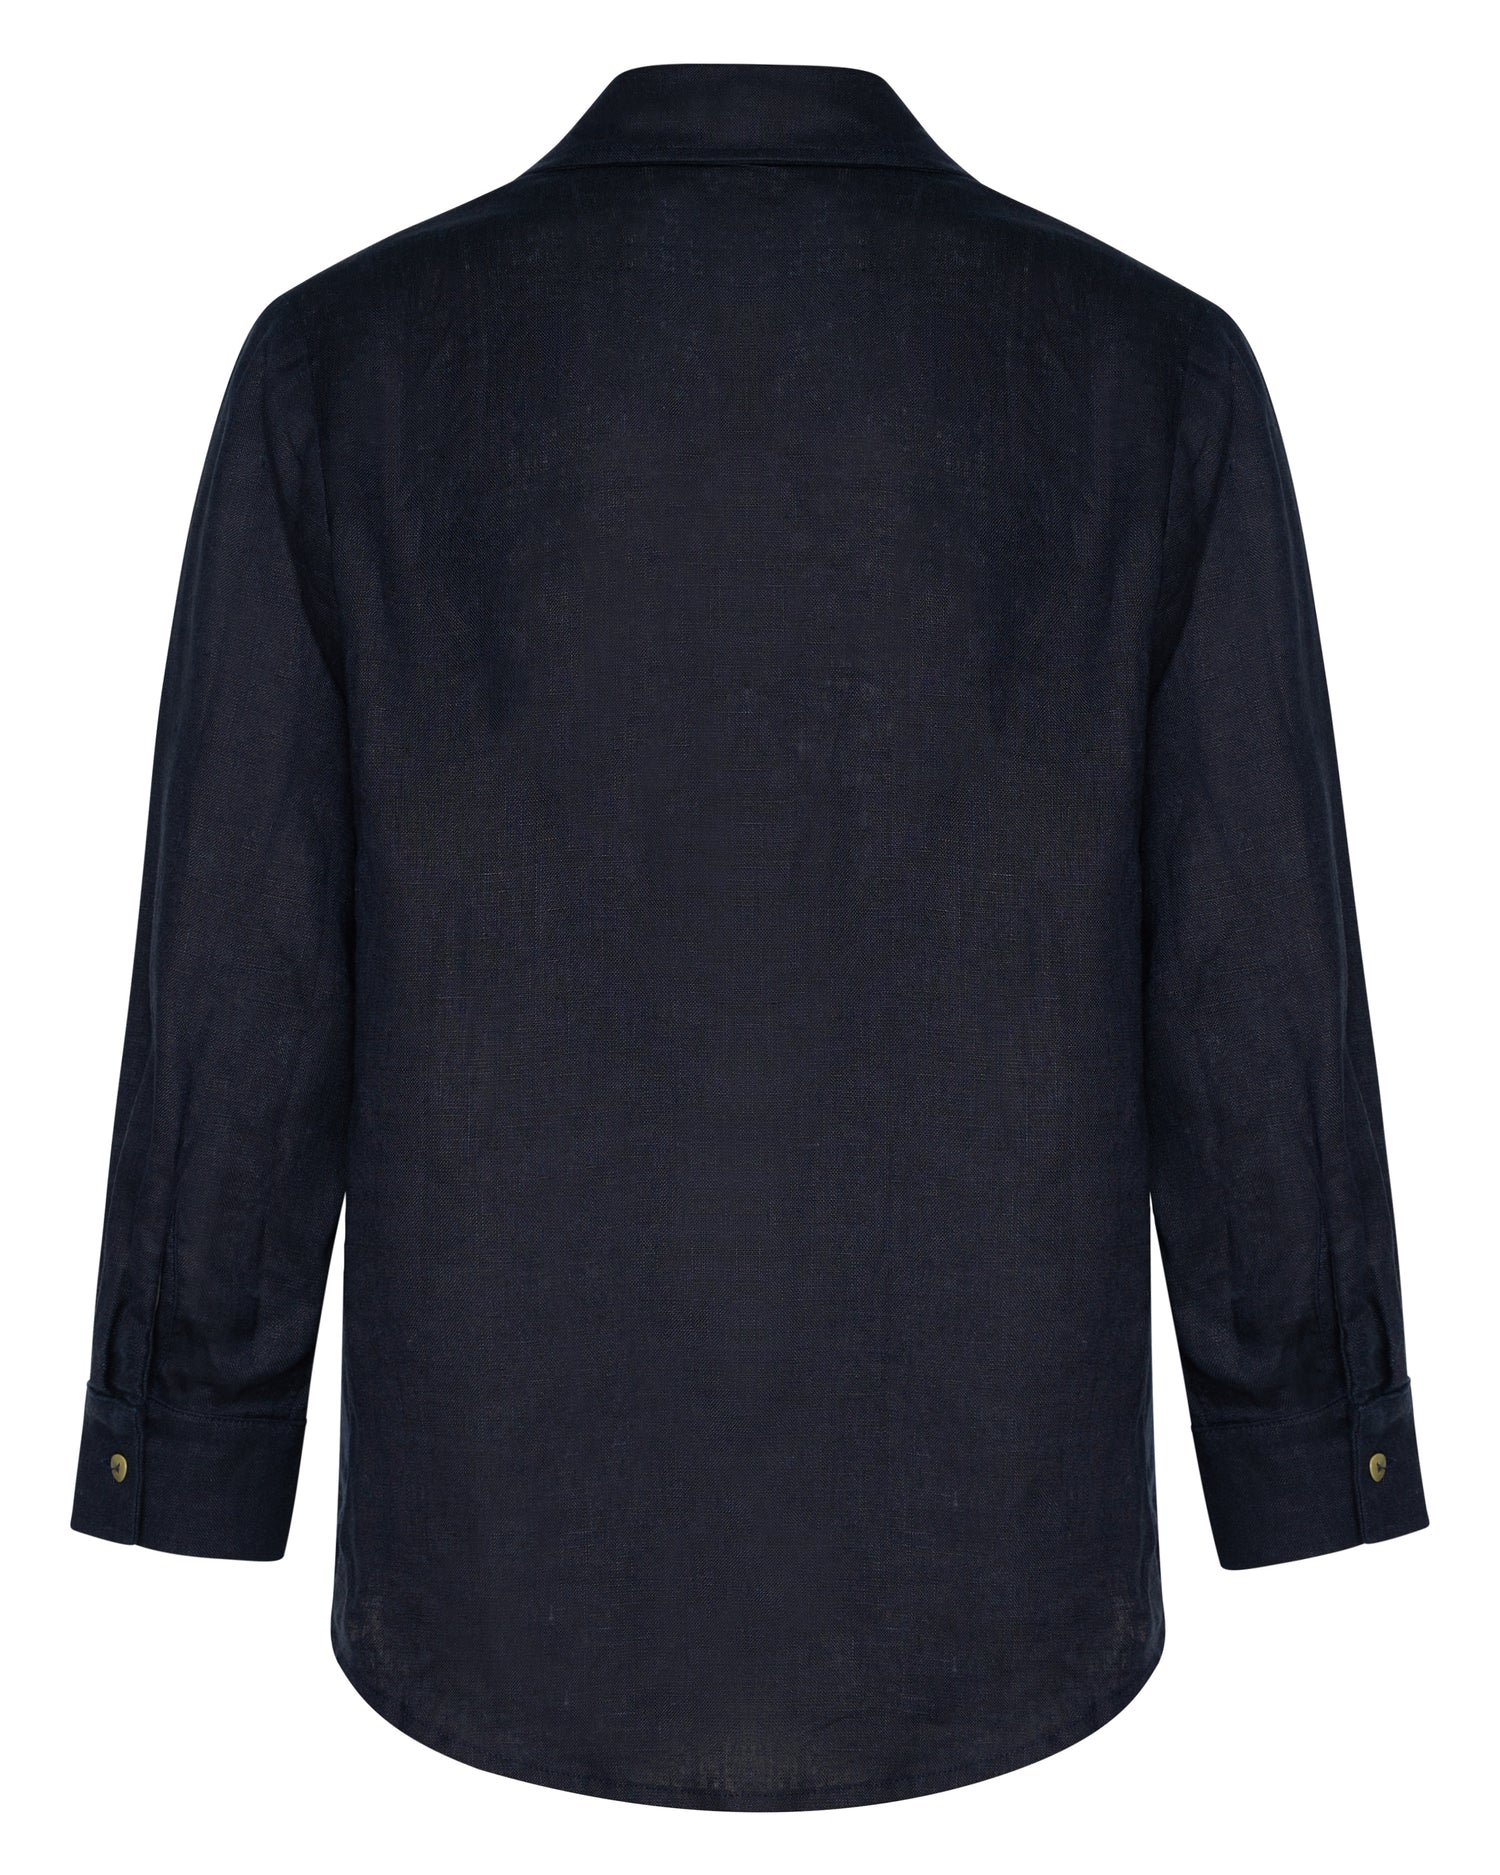 The back of a navy linen shirt.